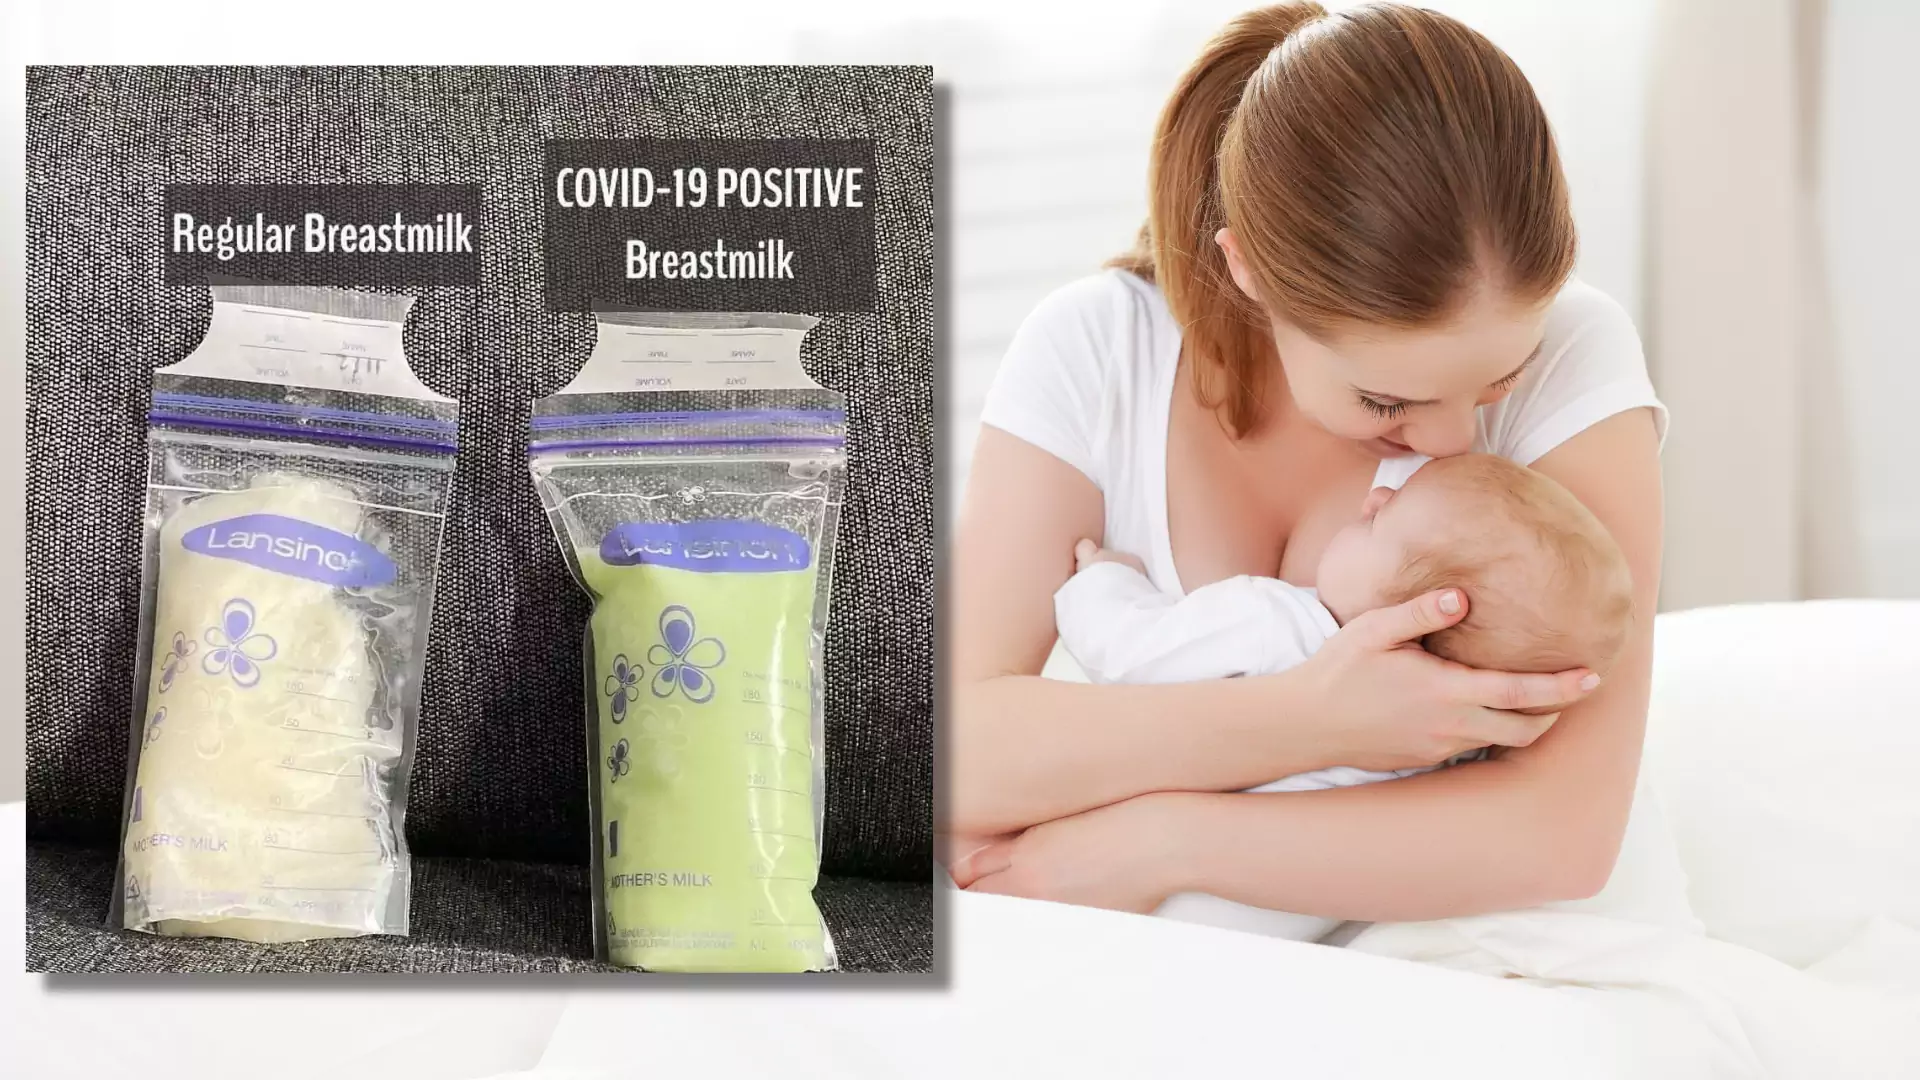 Mleko w jej piersiach stało się zielone, gdy zachorowała na COVID-19